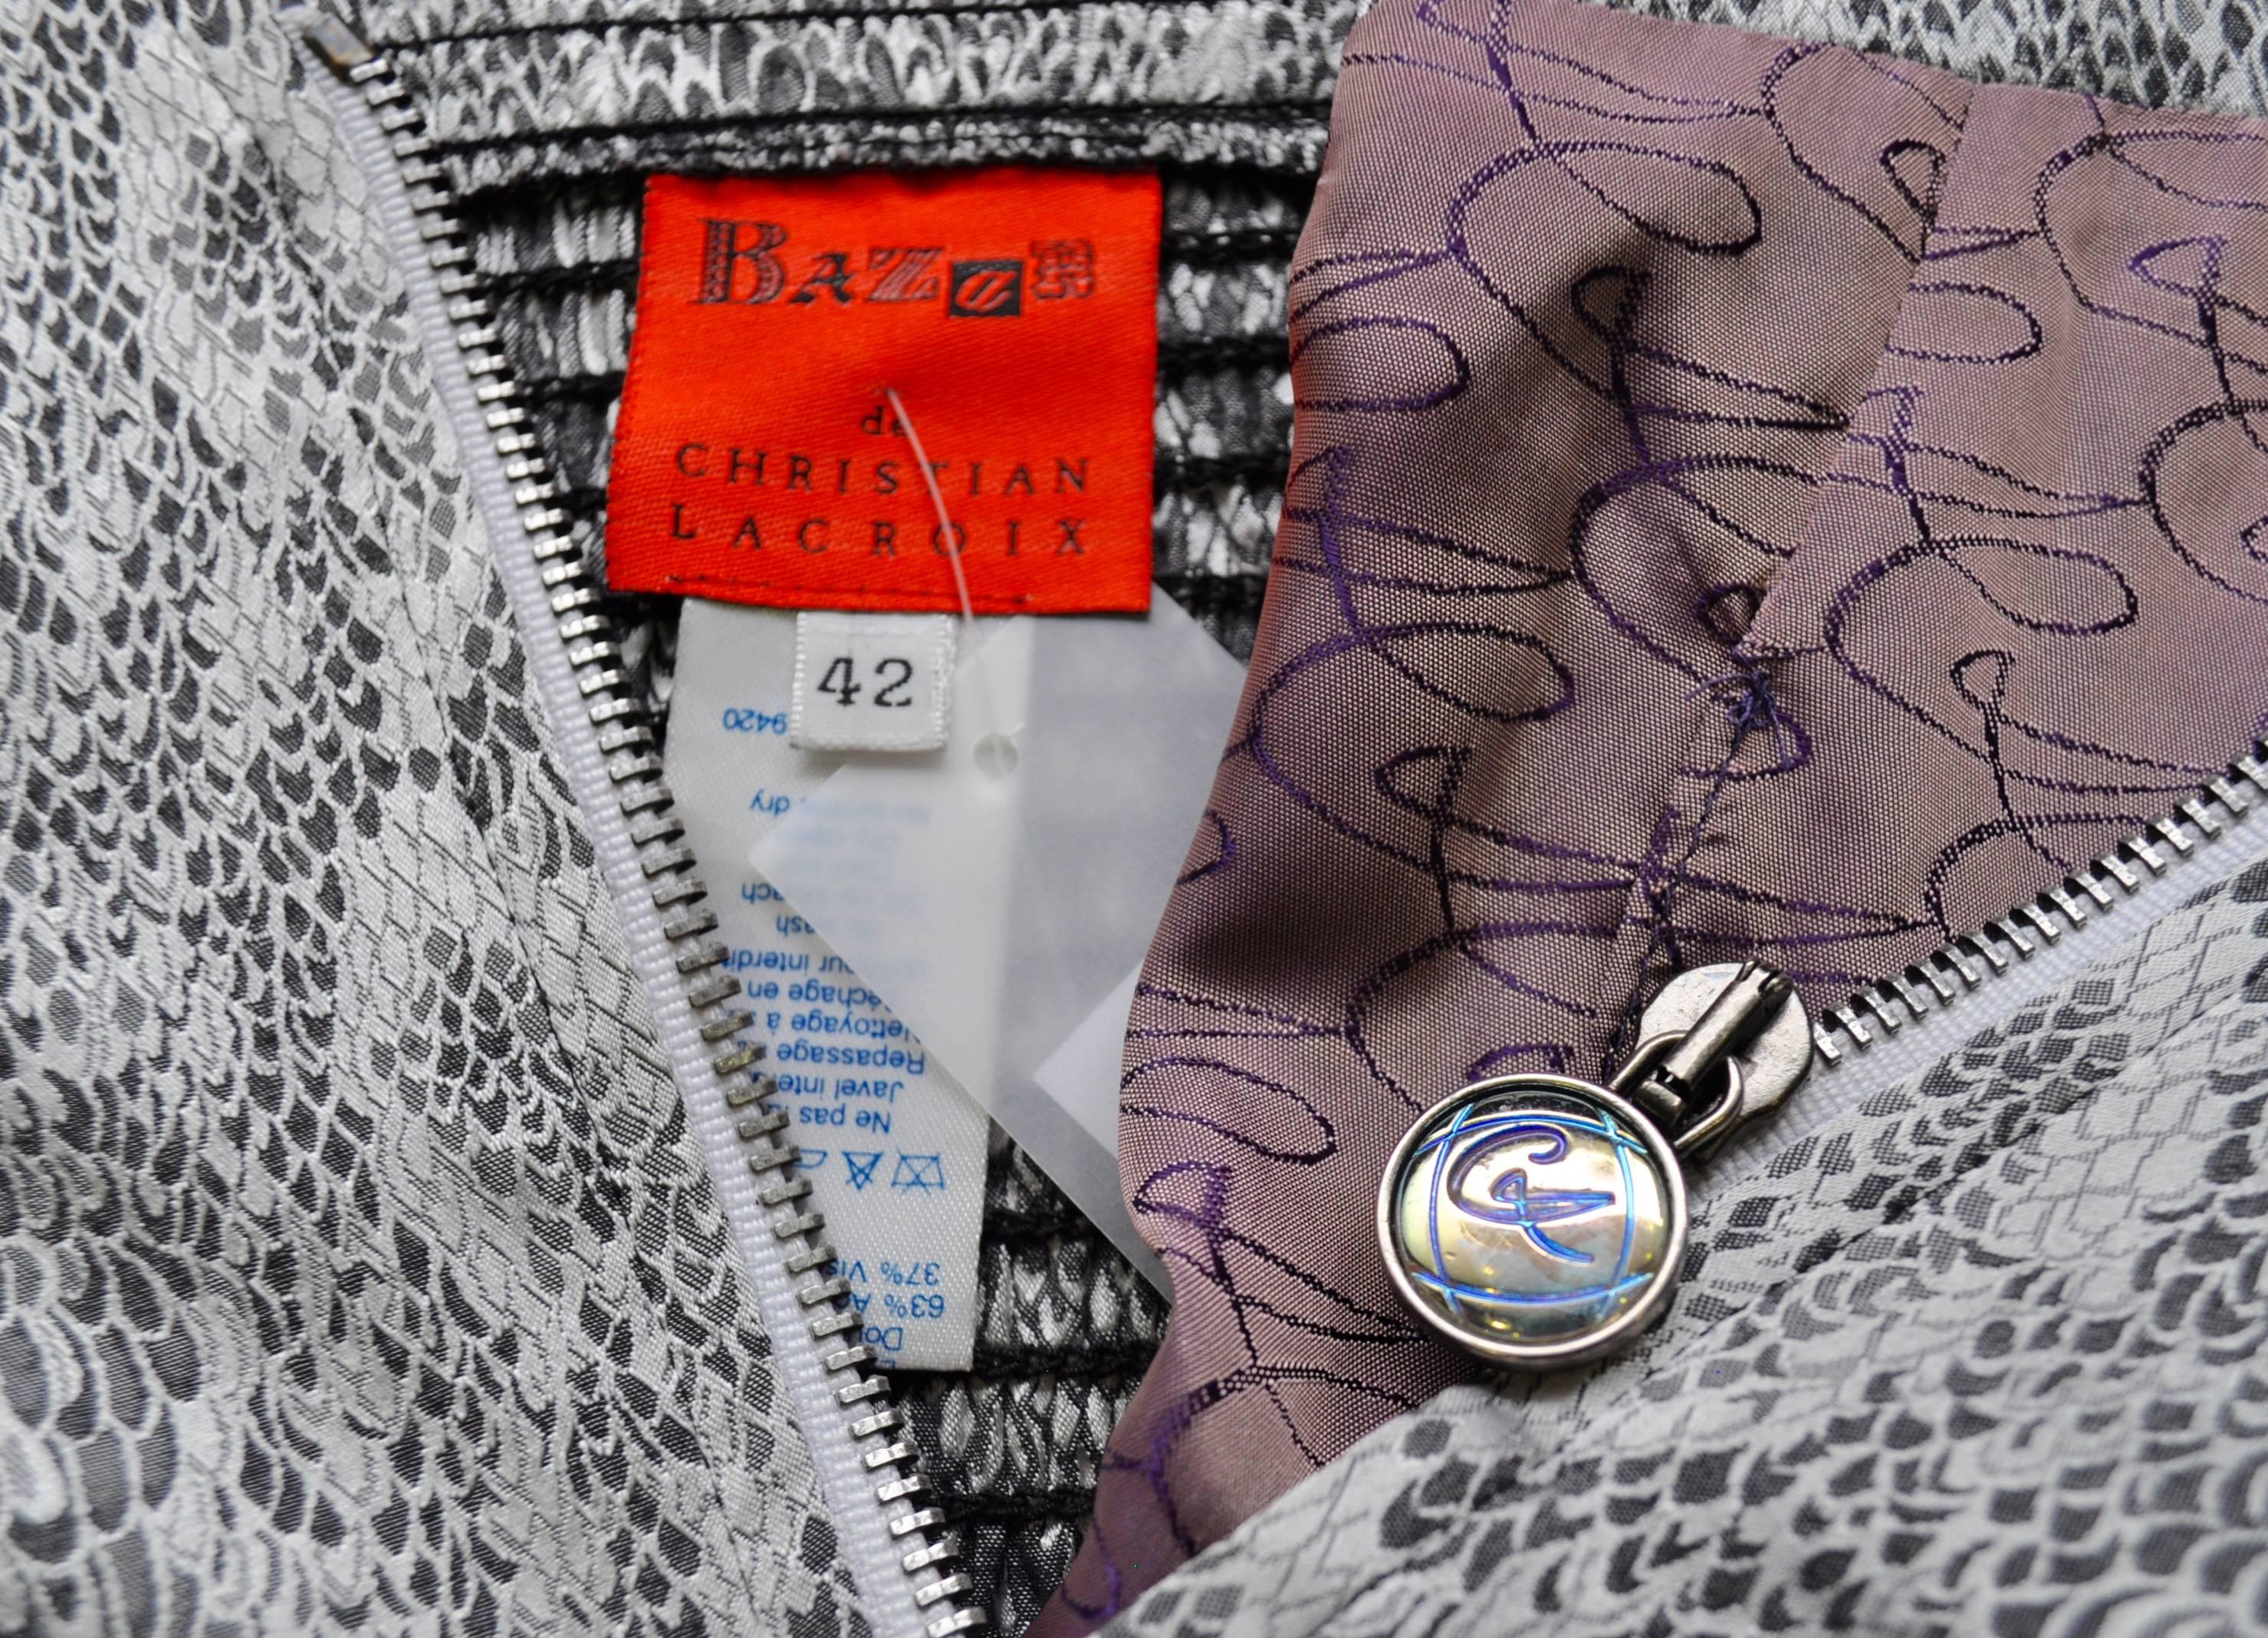 Sensational Bazar de Christian Lacroix Strapless Bustier Snake Print Pantsuit For Sale 5